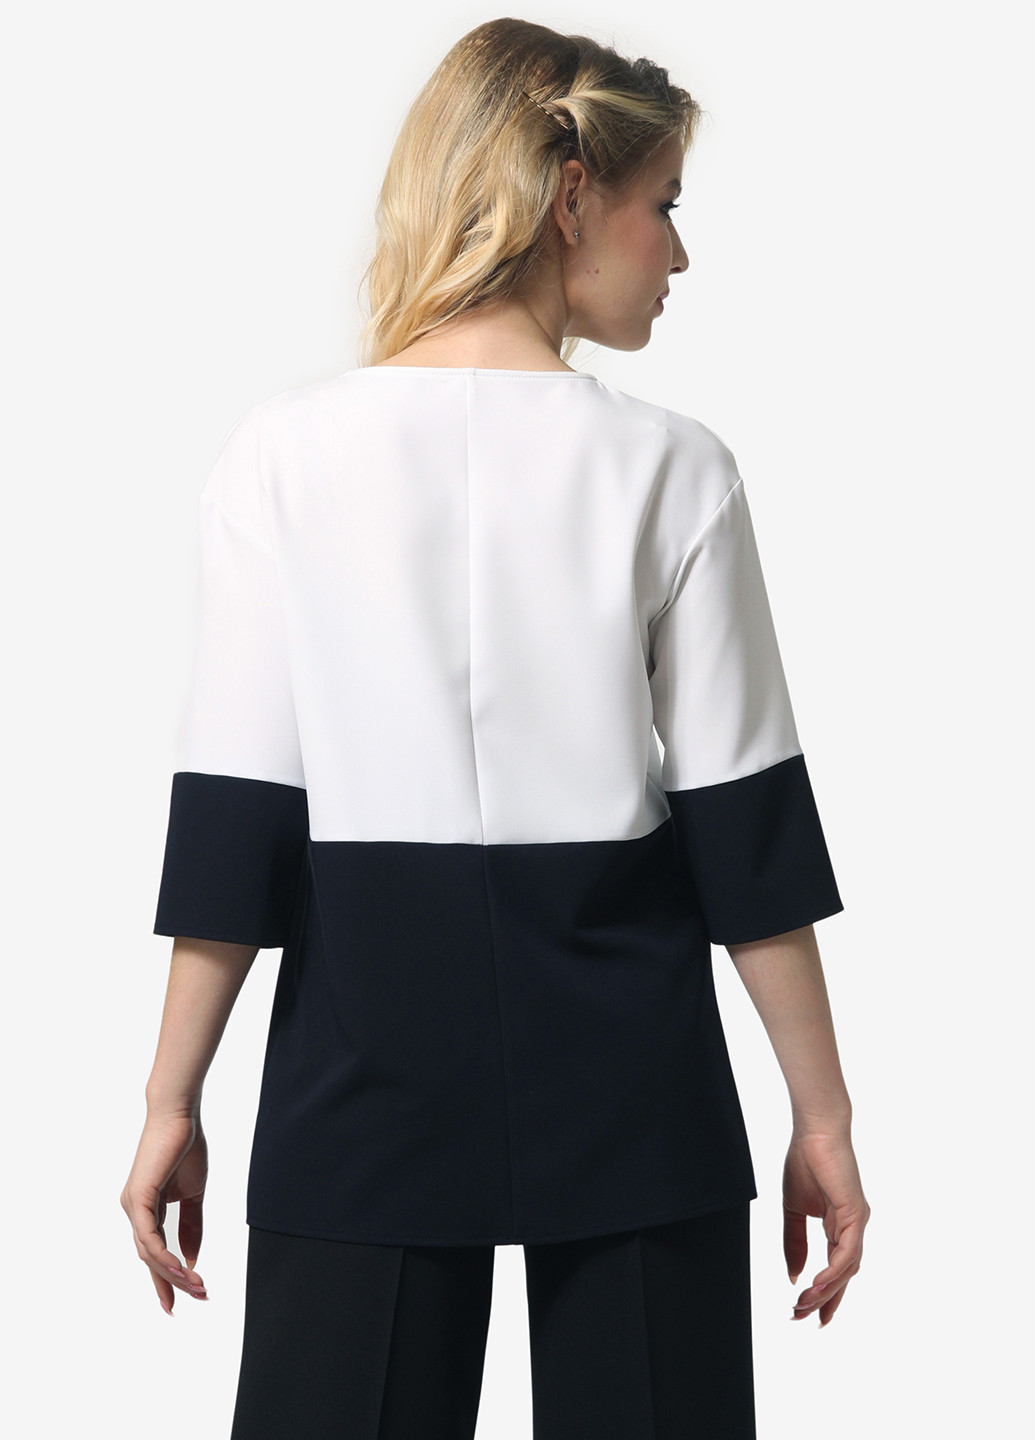 Черно-белая демисезонная блуза Lila Kass